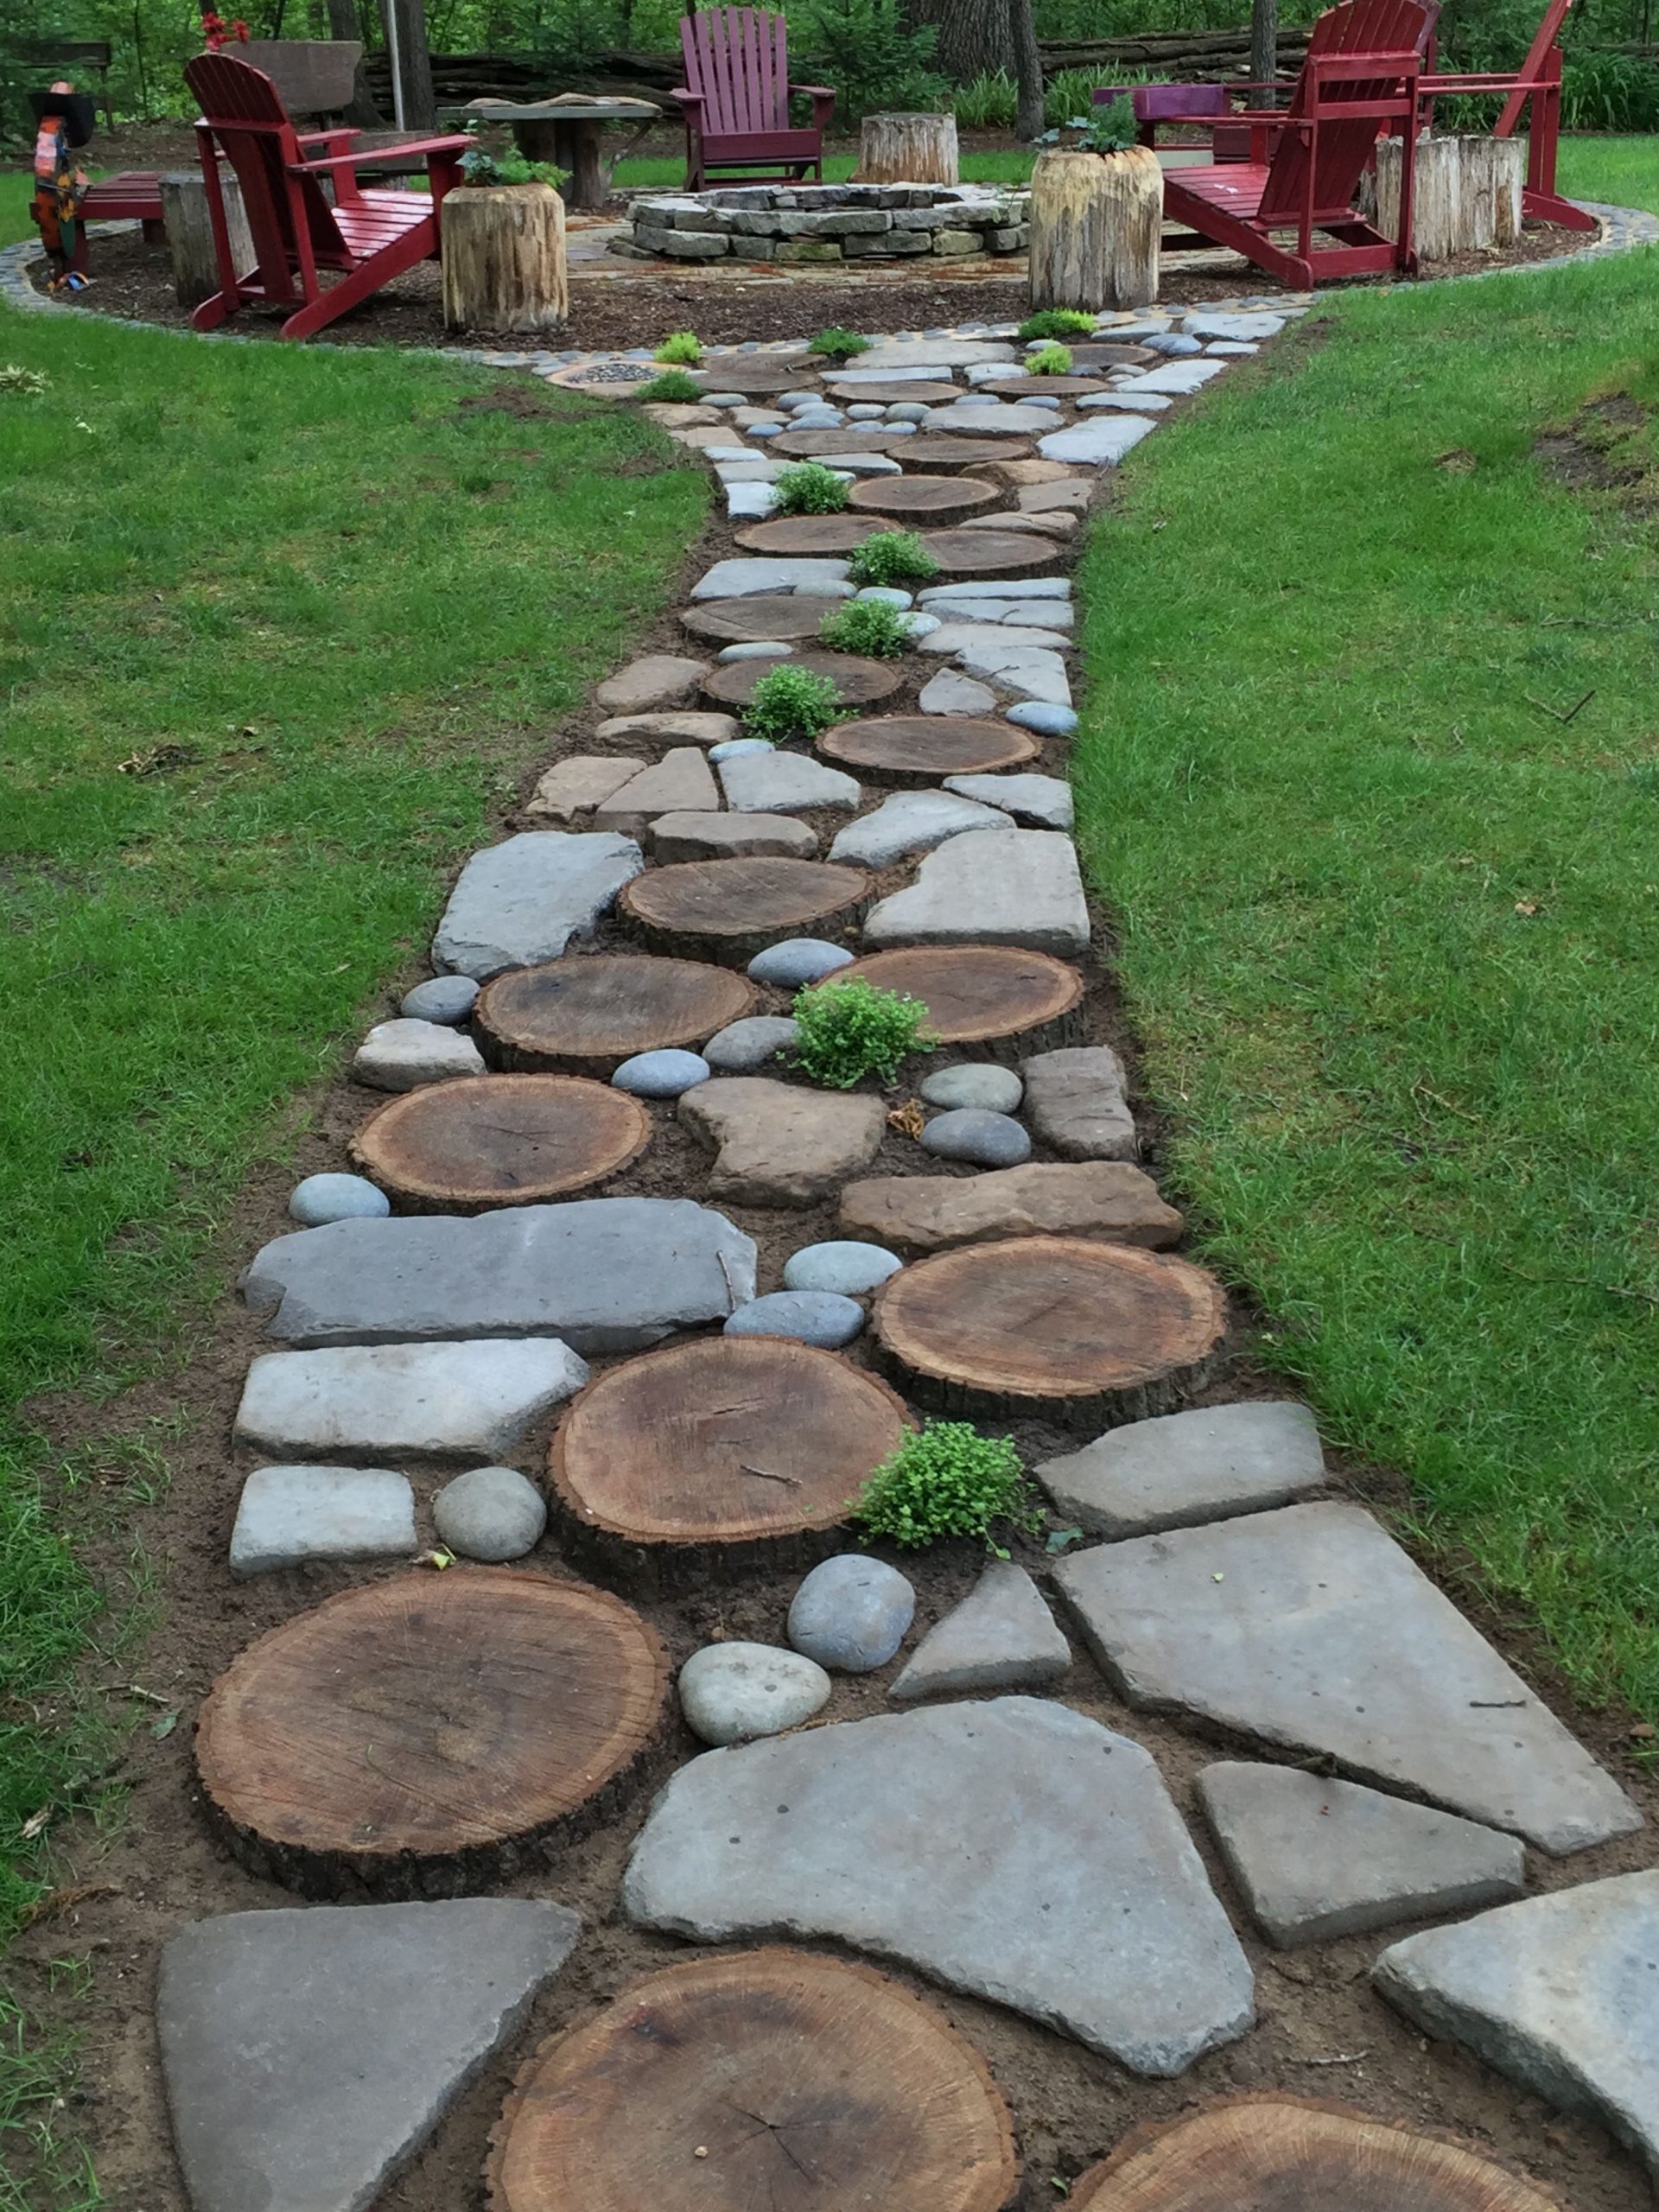 49 Adorable Rock Garden Ideas For Backyard – decorafit.com/home